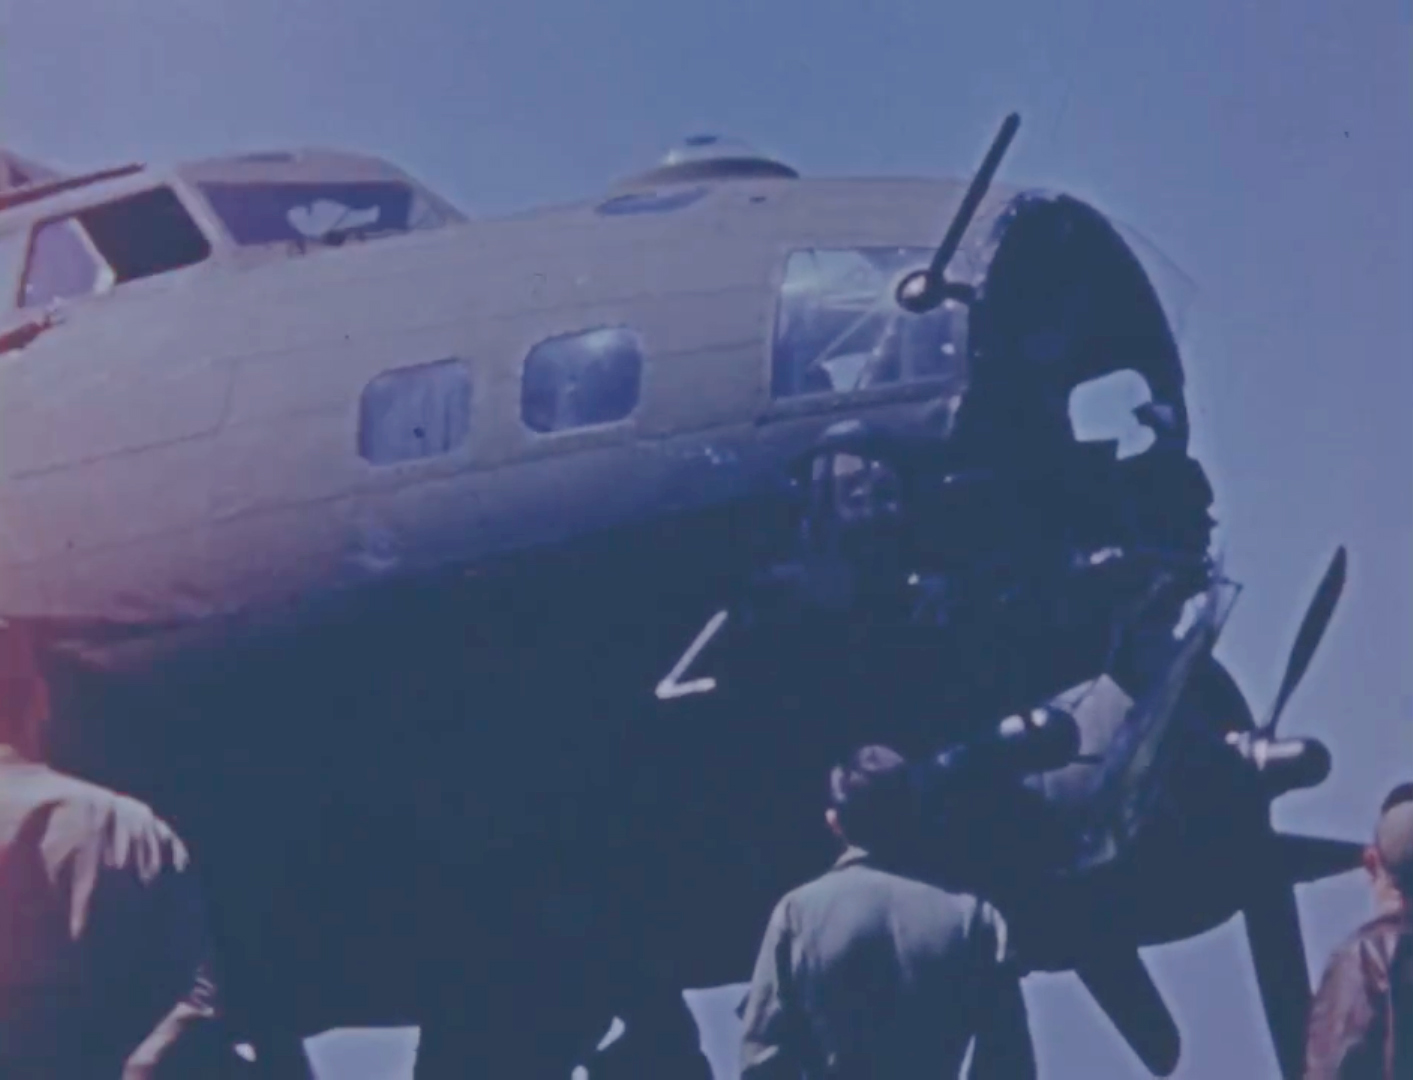 B-17 42-29673